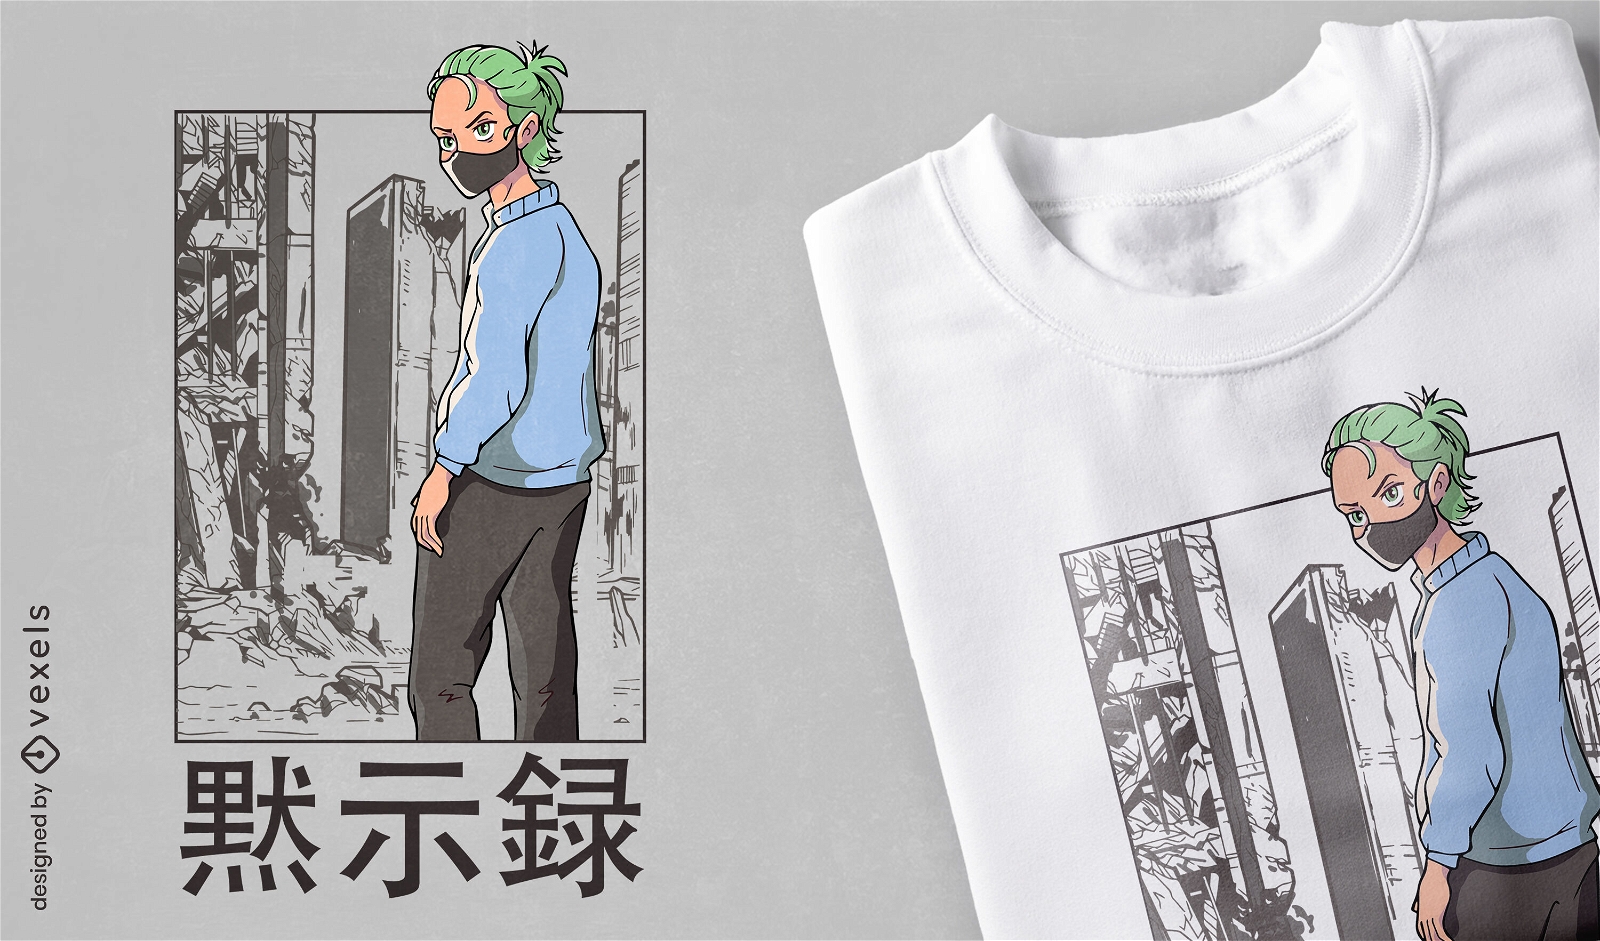 Baixar Vetor De Design De T-shirt Anime Cavalo Bruxa